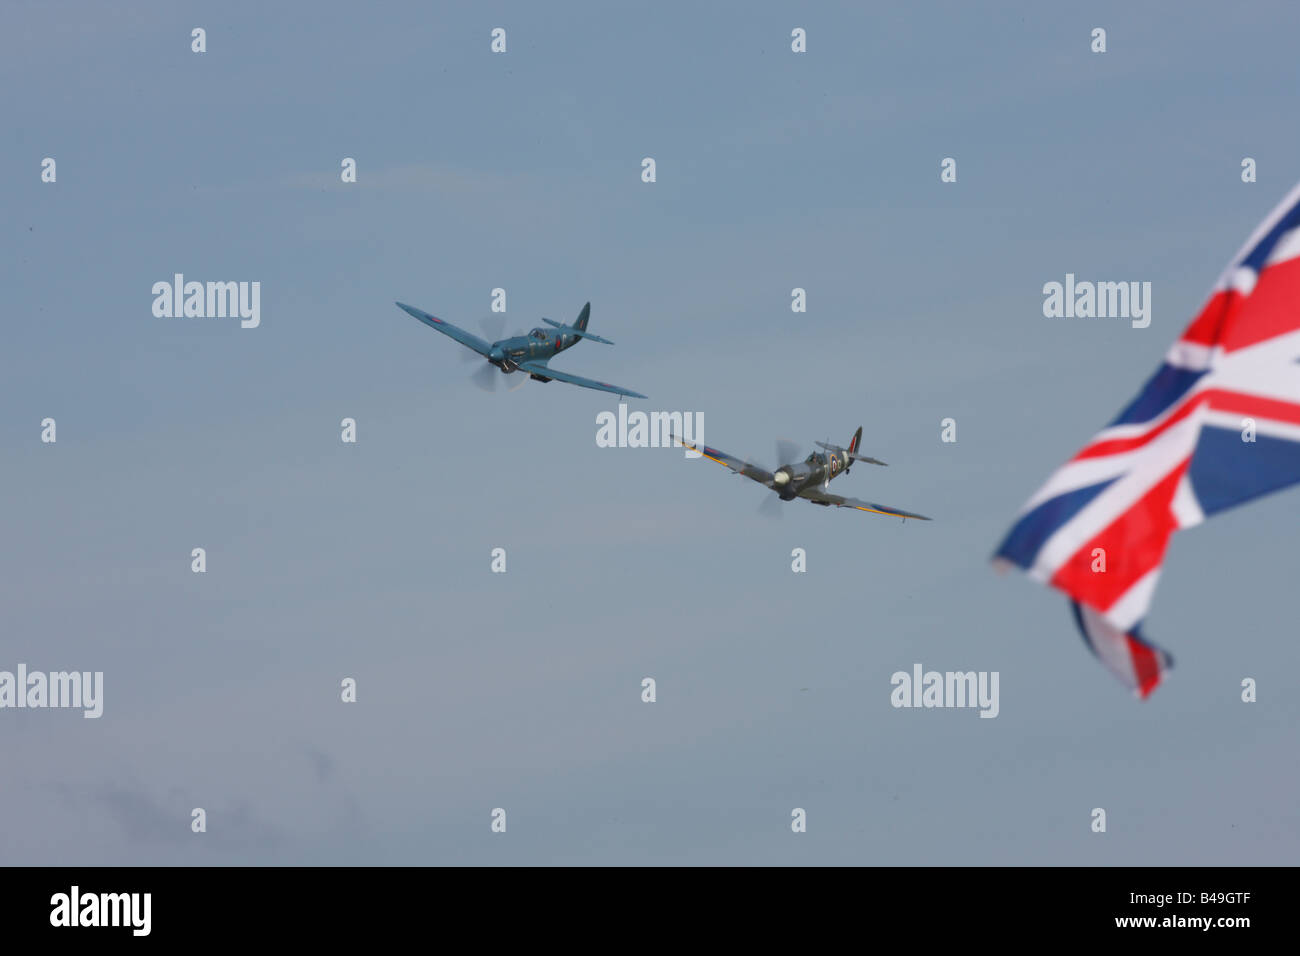 Stolz von Großbritannien Spitfires vorbeifliegen Anschluß-Markierungsfahne in Bildung Stockfoto